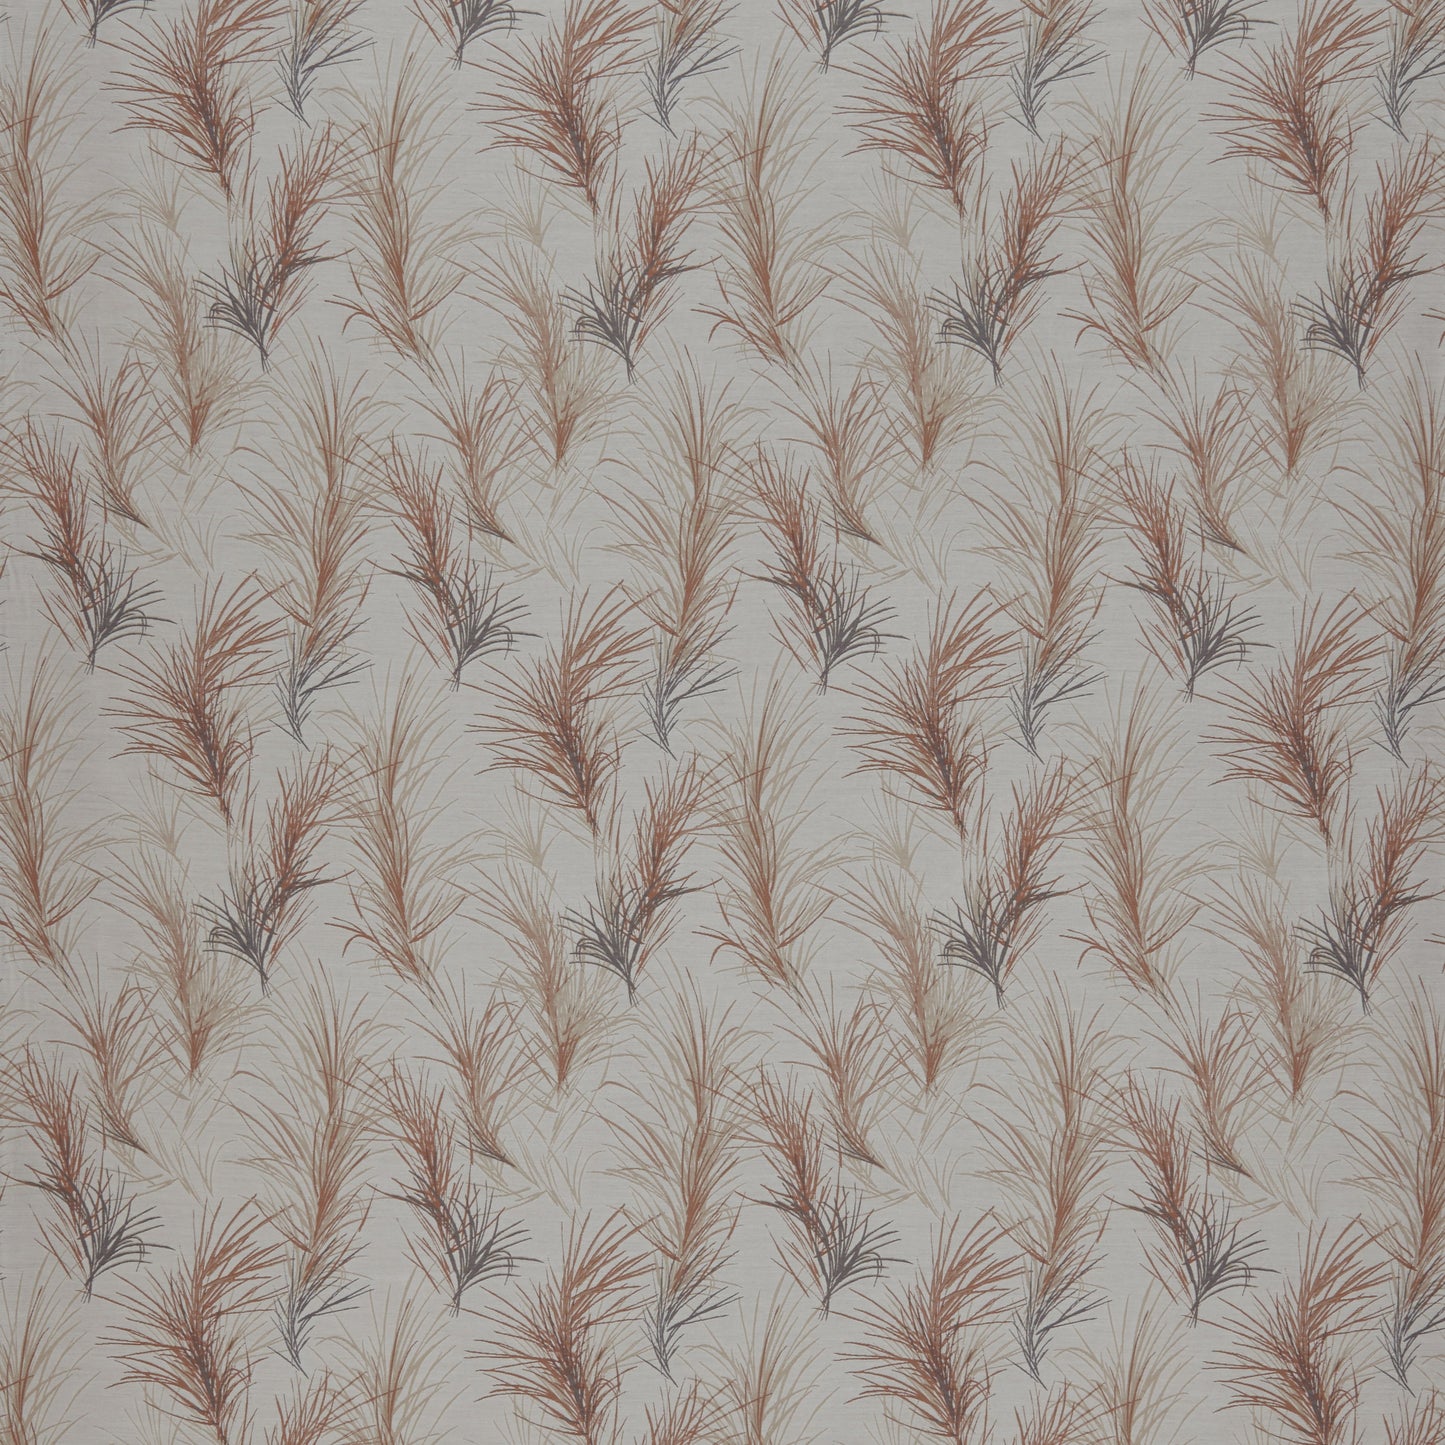 ILIV Feather Boa Coral Cushion Cover